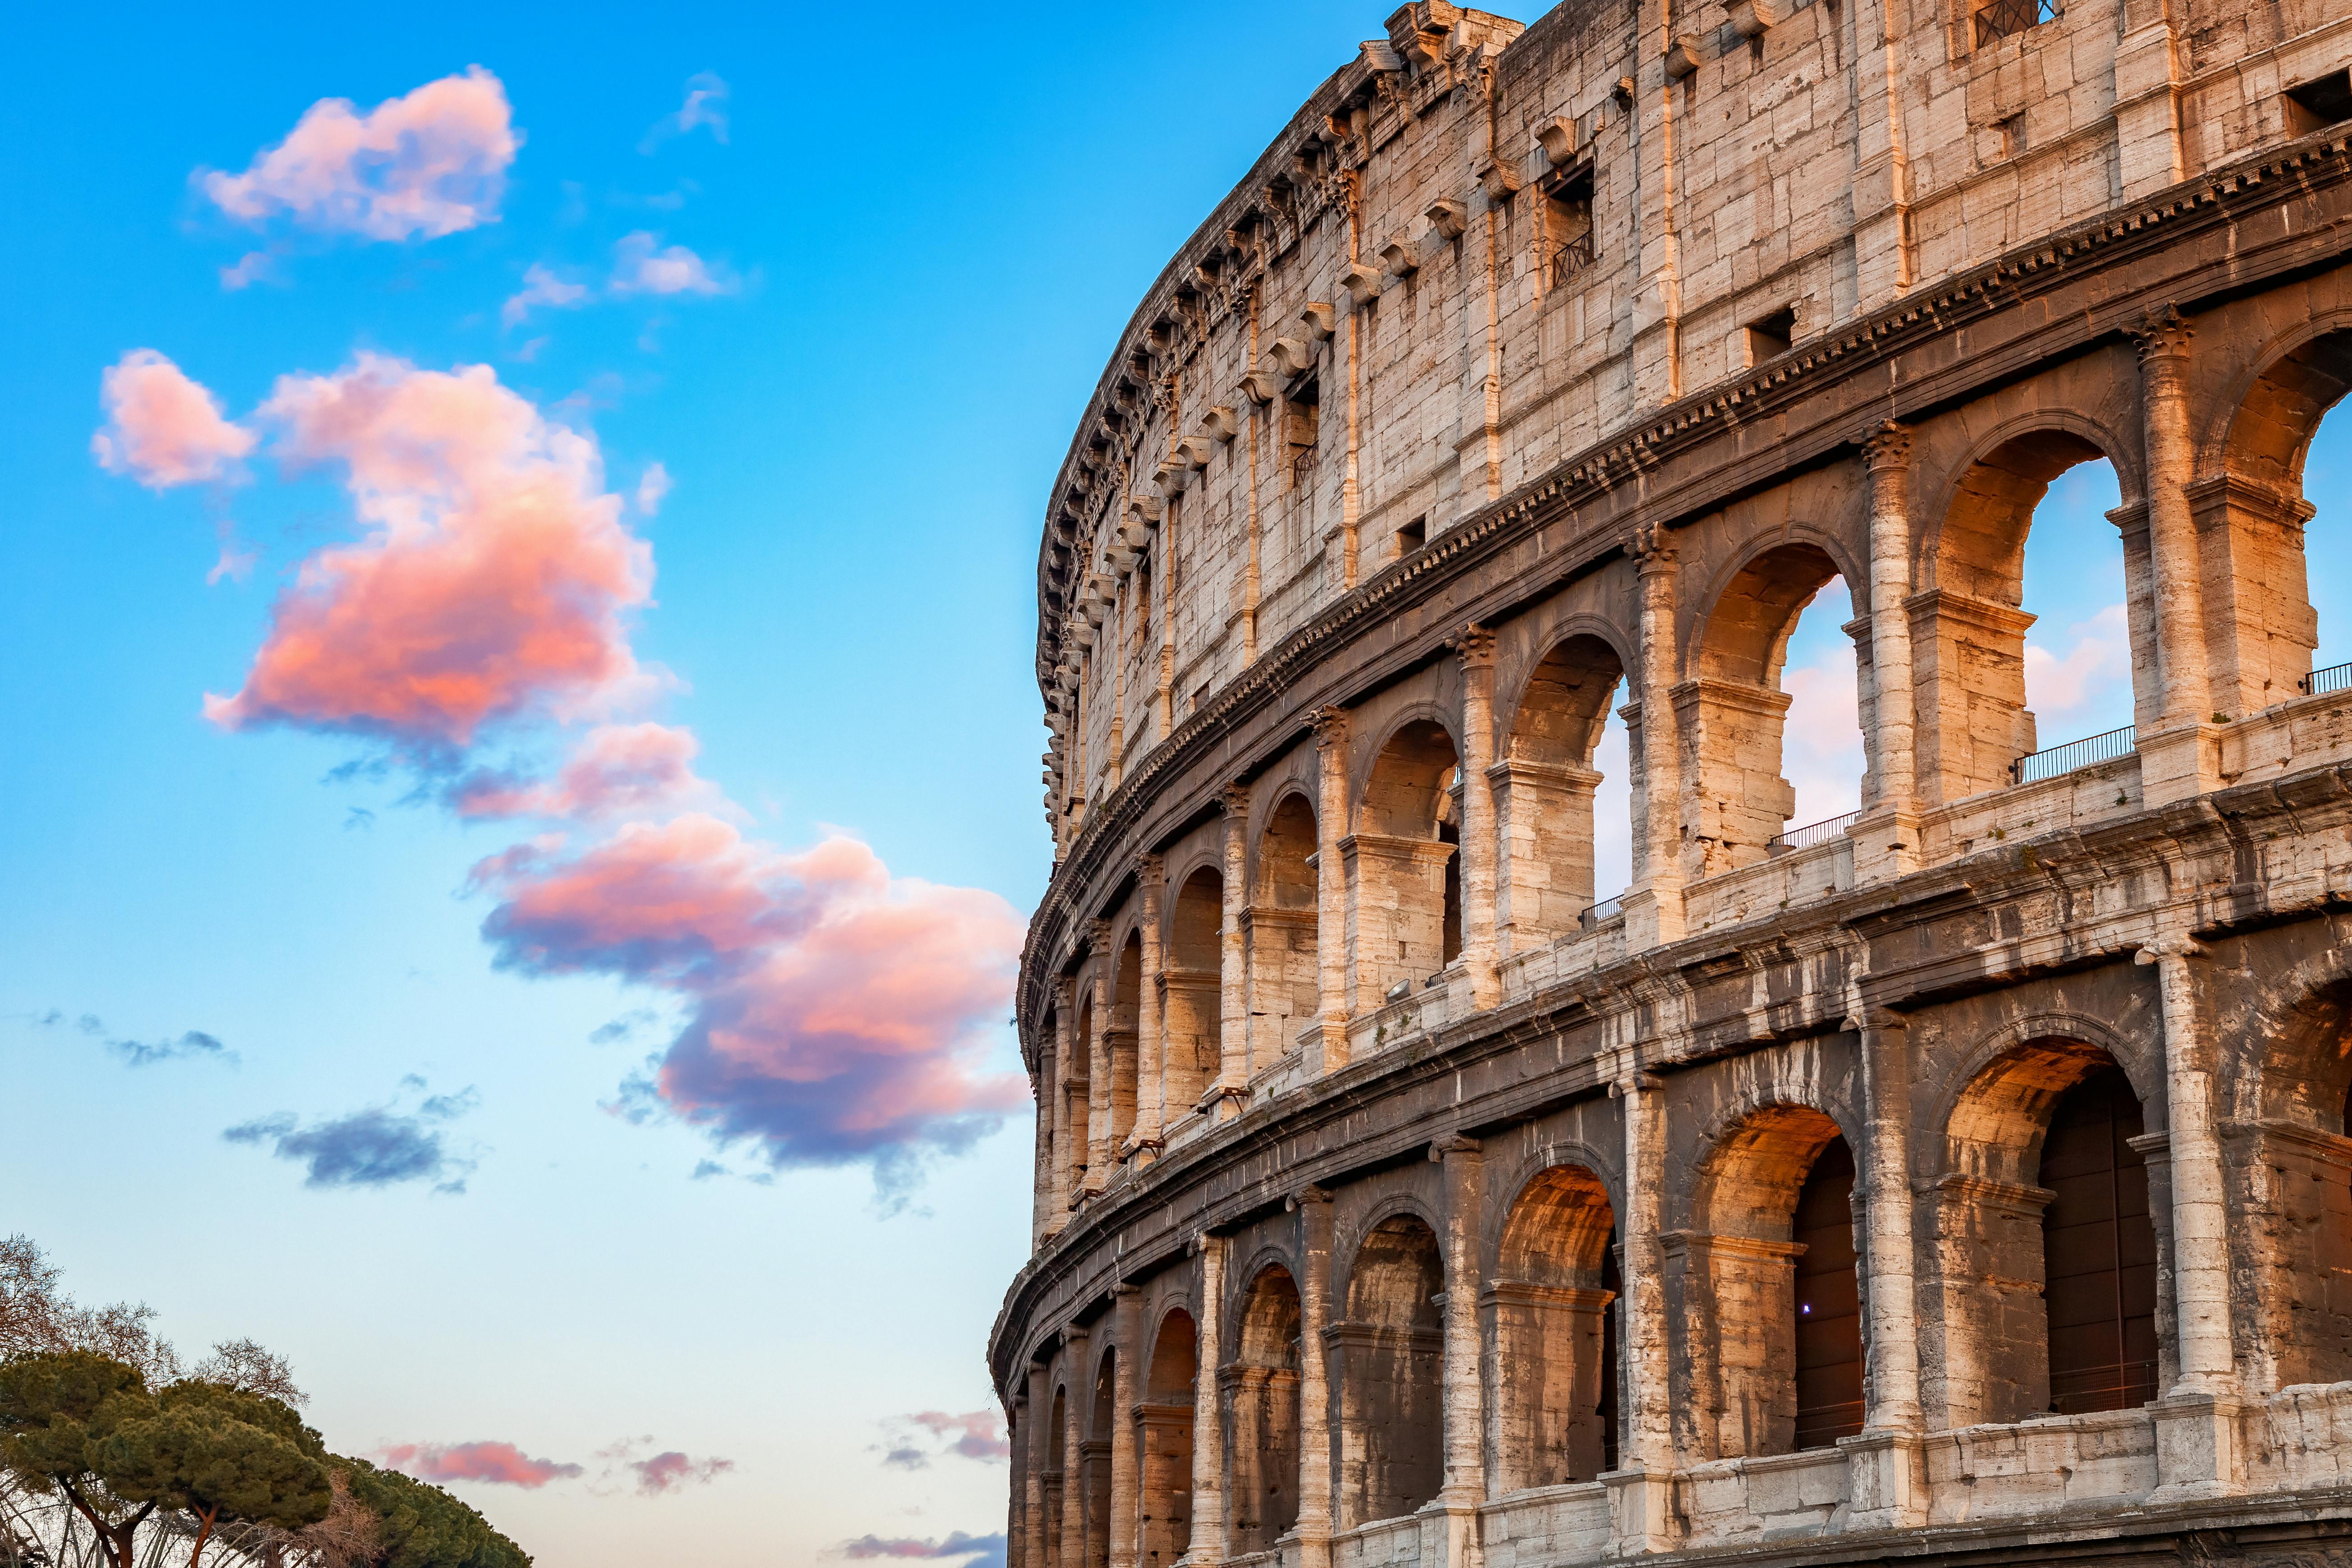 Samodzielne zwiedzanie Koloseum z podcastem